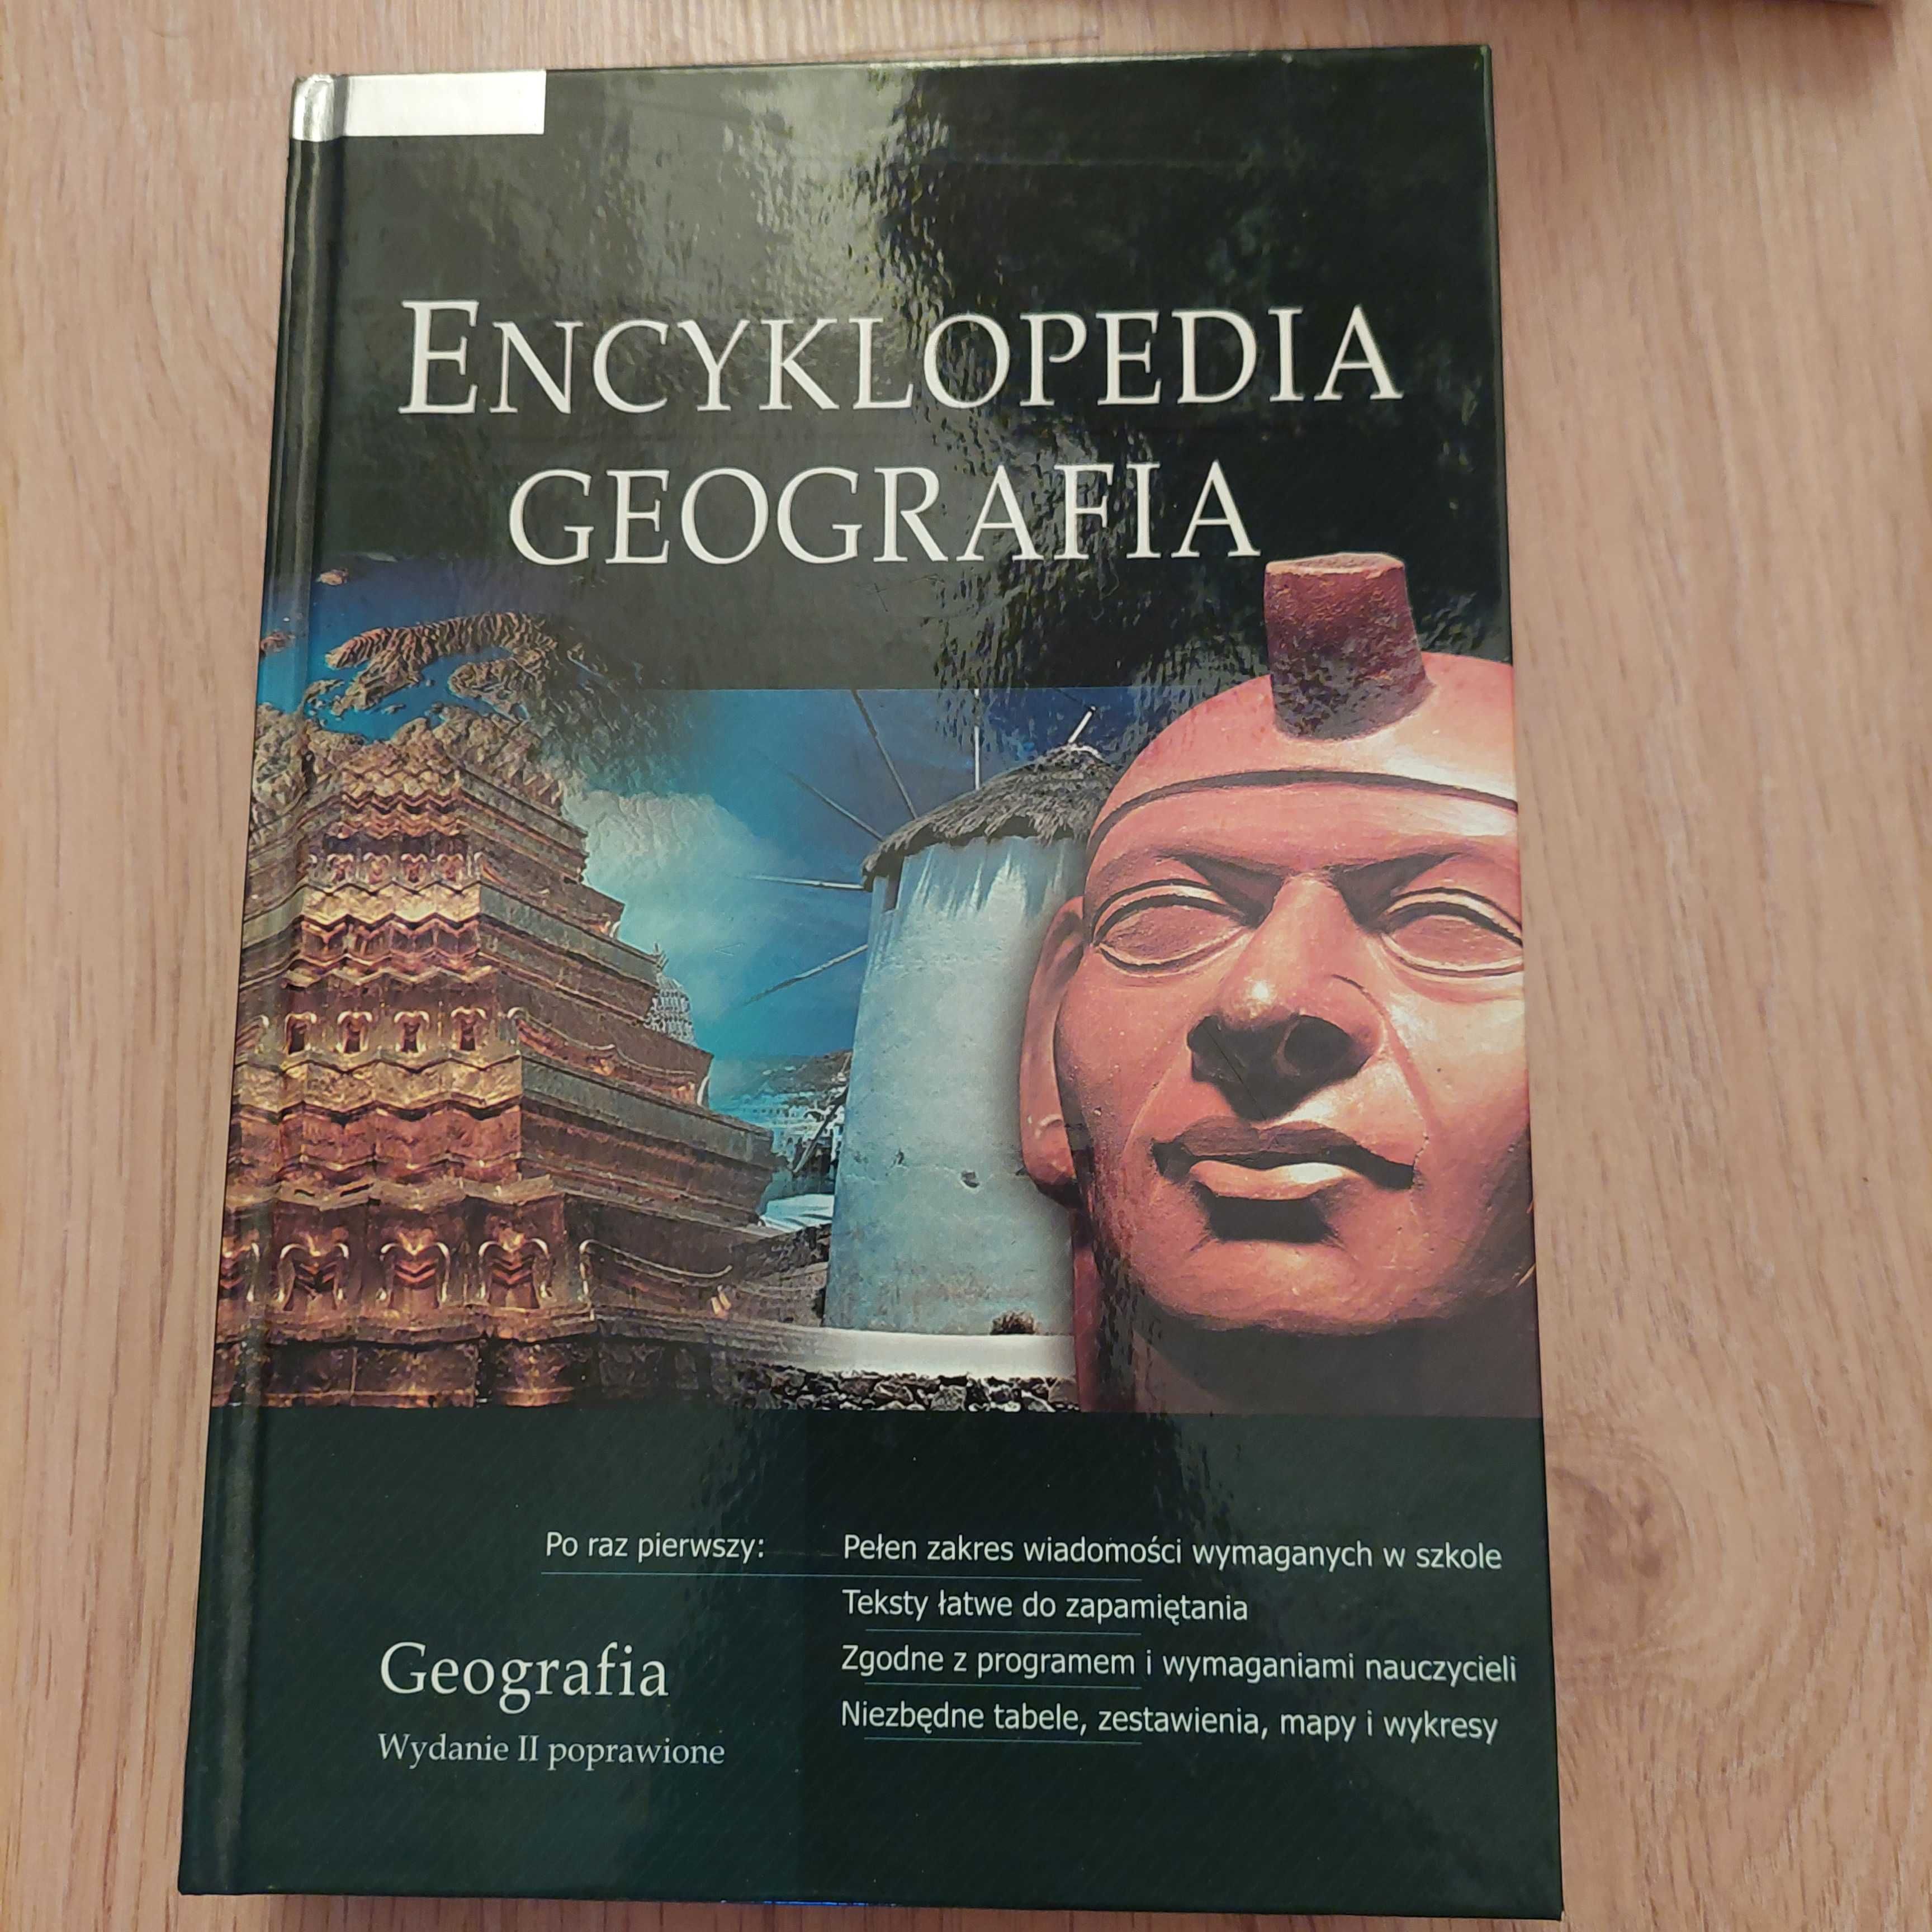 Encyklopedia Geografia Praca zbiorowa